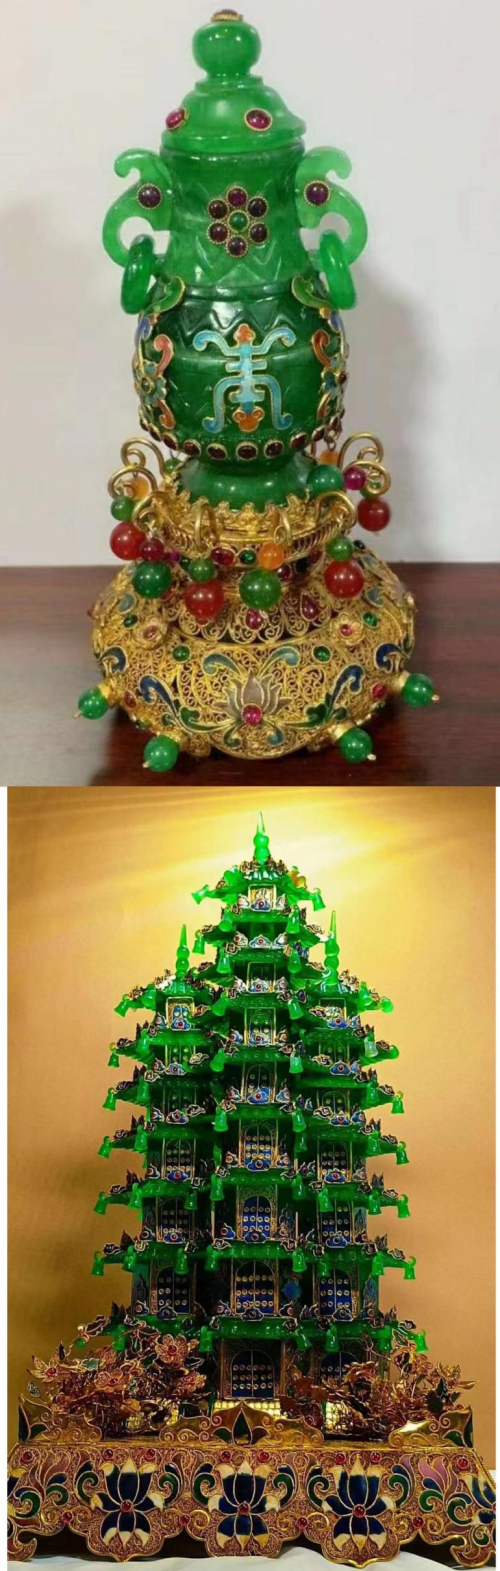 中国洪门五圣山91周年寿诞-环球汽车之家